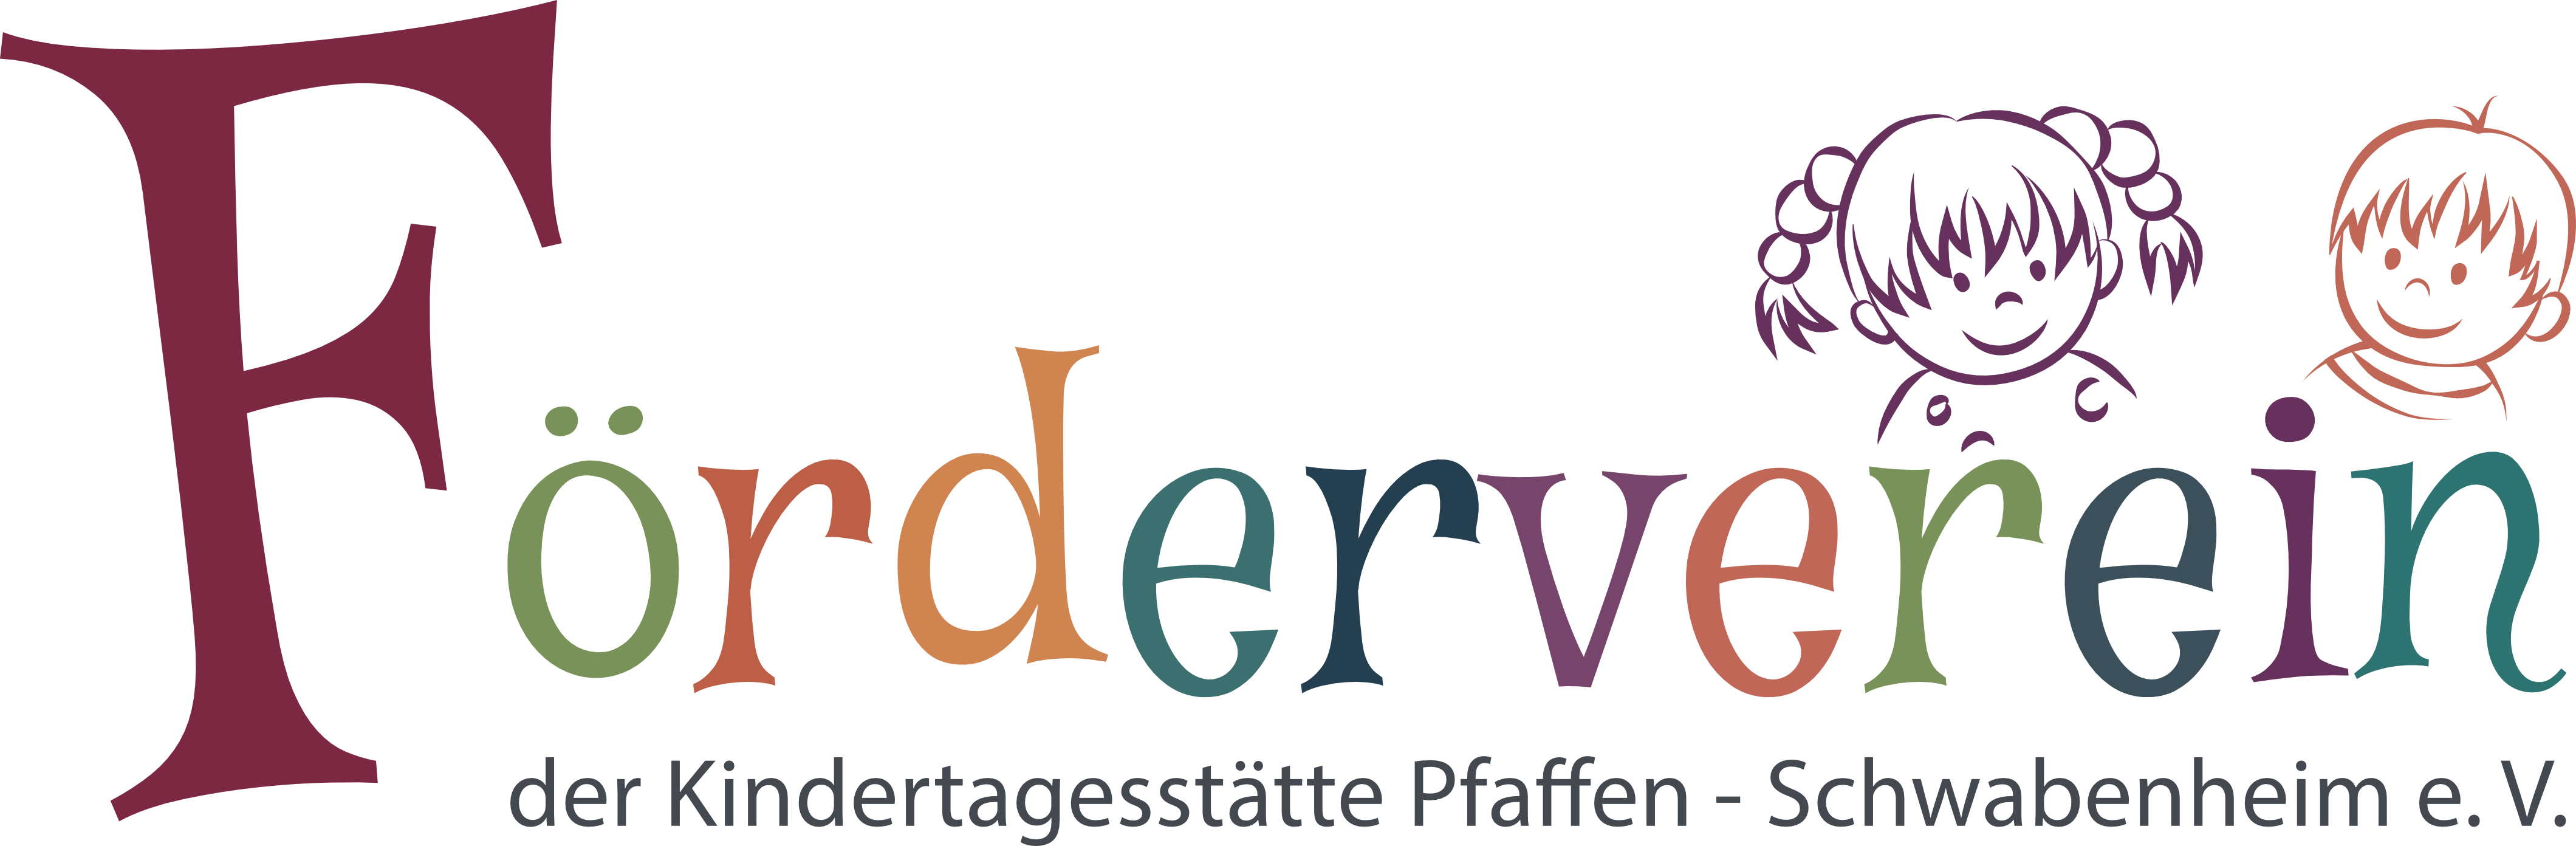 Foerderverein der Kindertagesstätte Pfaffen-Schwabenheim